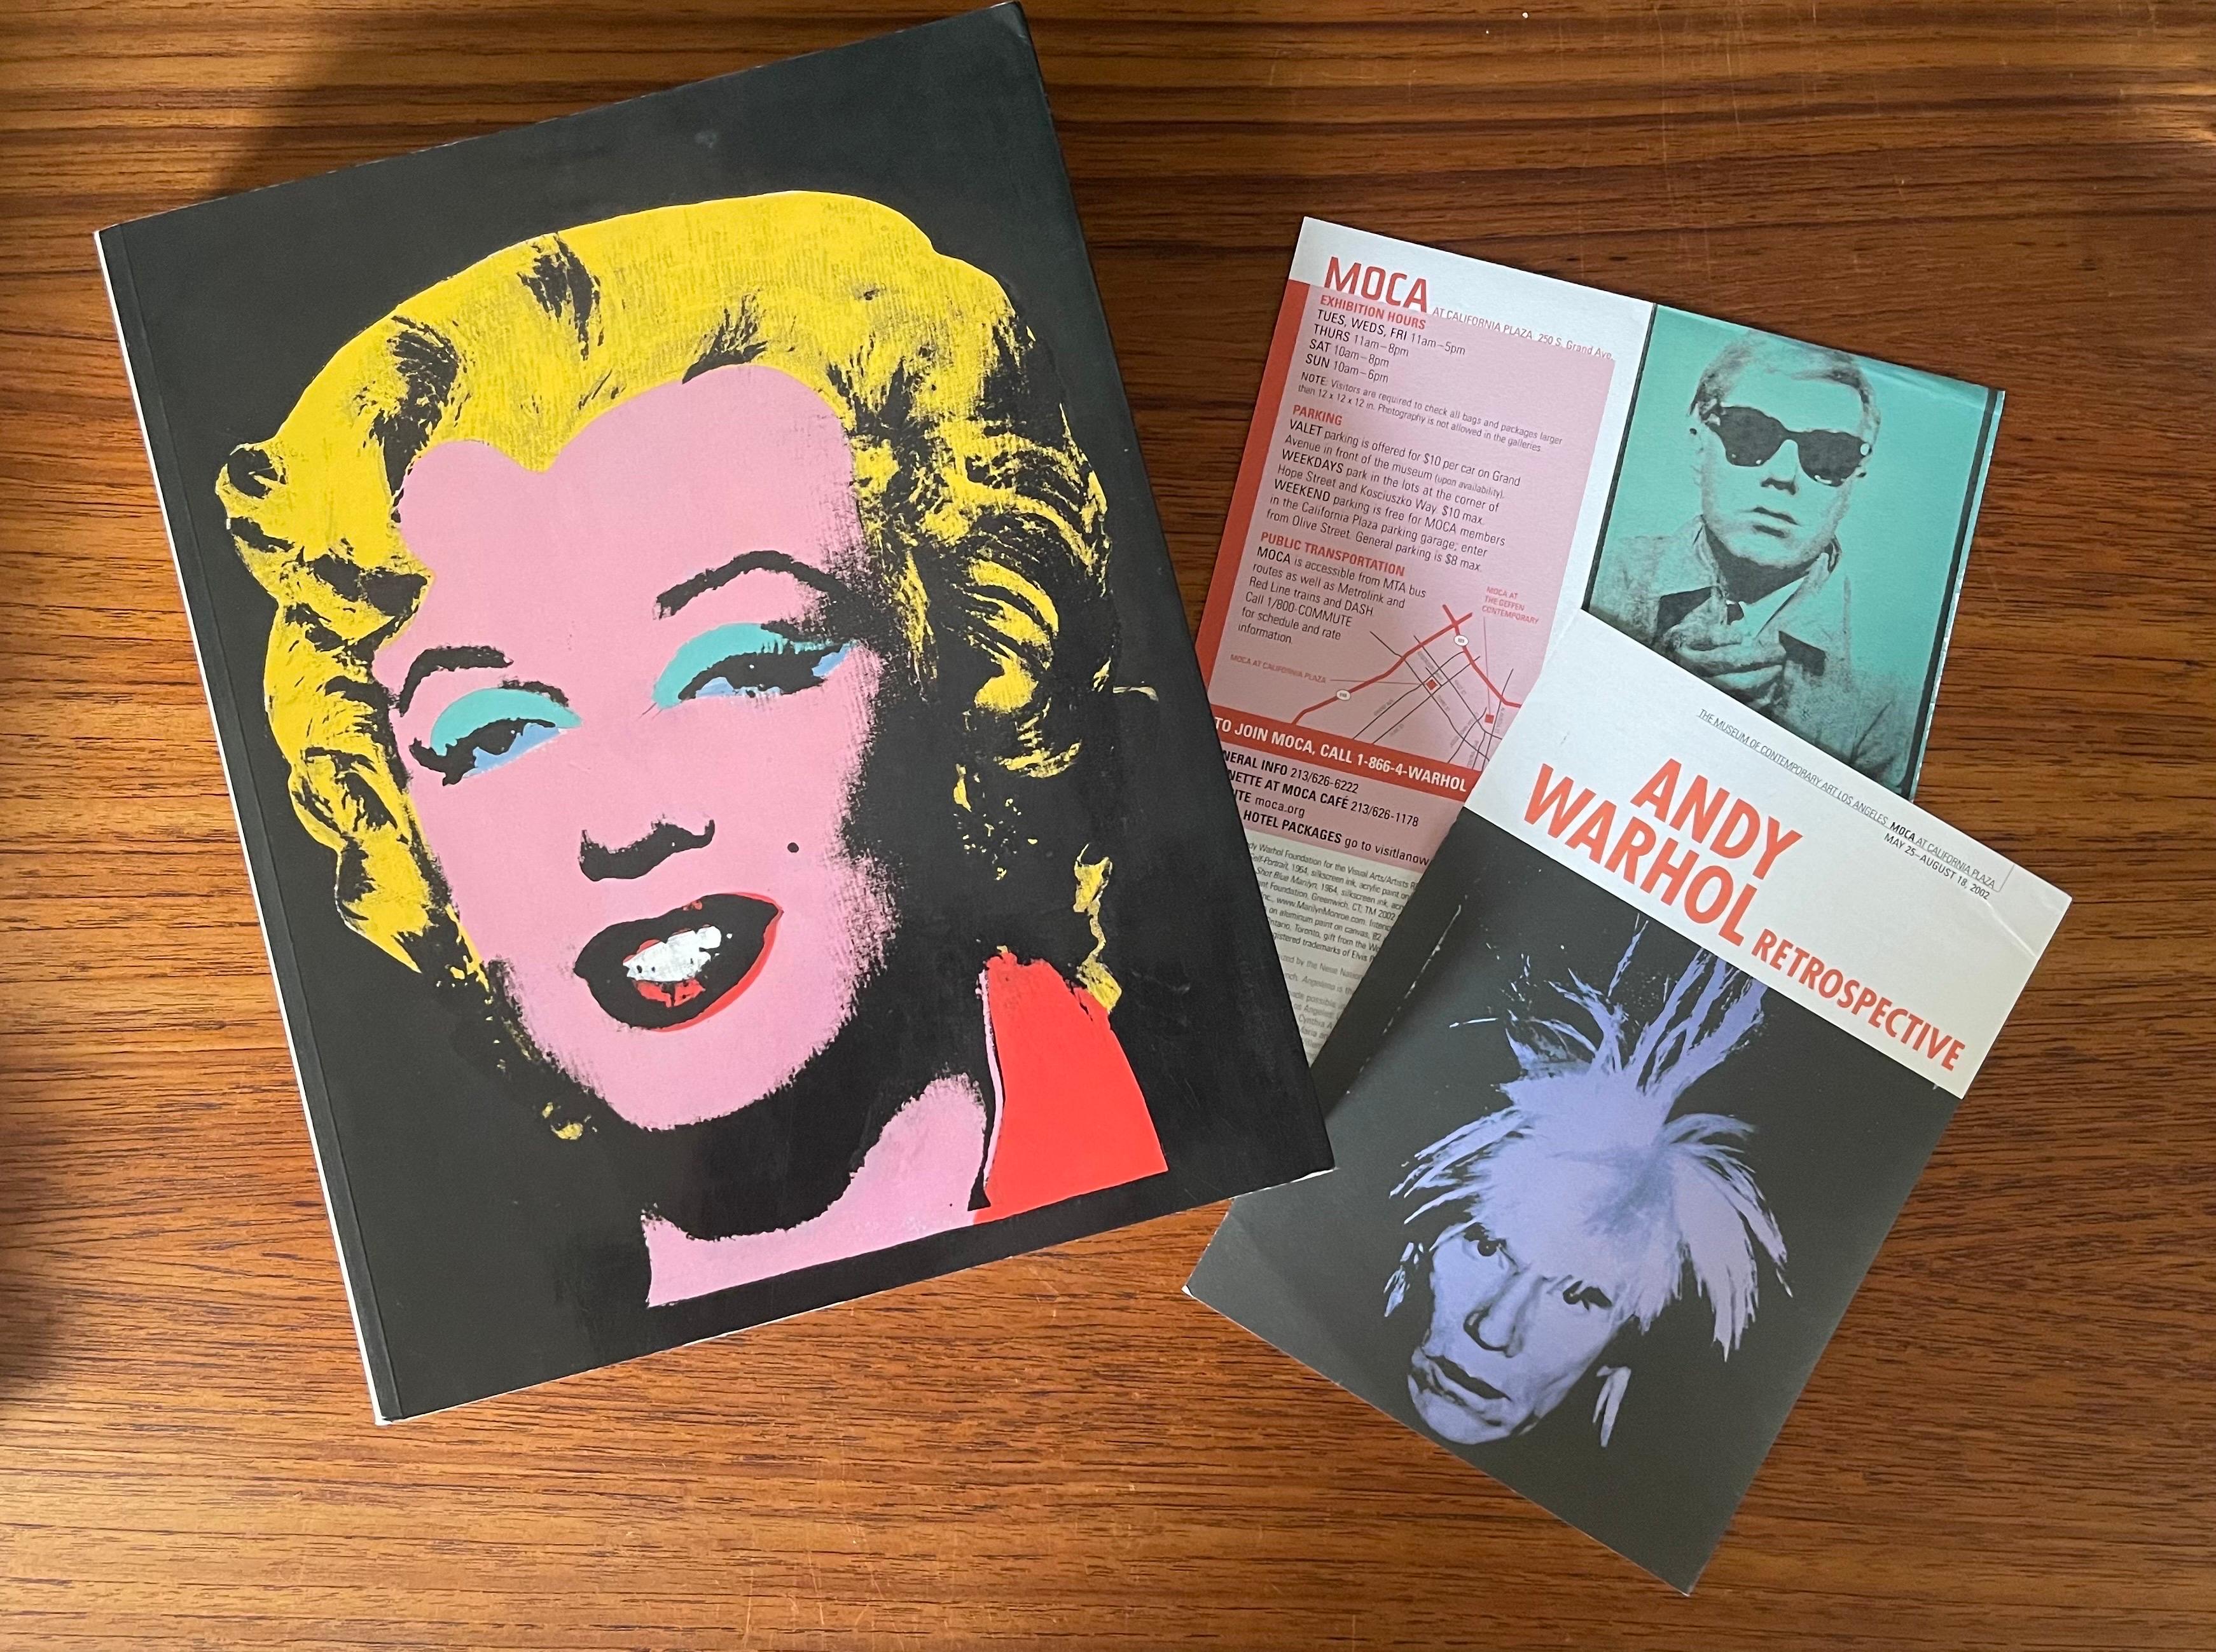 Mid-Century Modern Livres d'art rétrospectifs et programmes d'expositions Moca LA 2002 de Warhol en vente